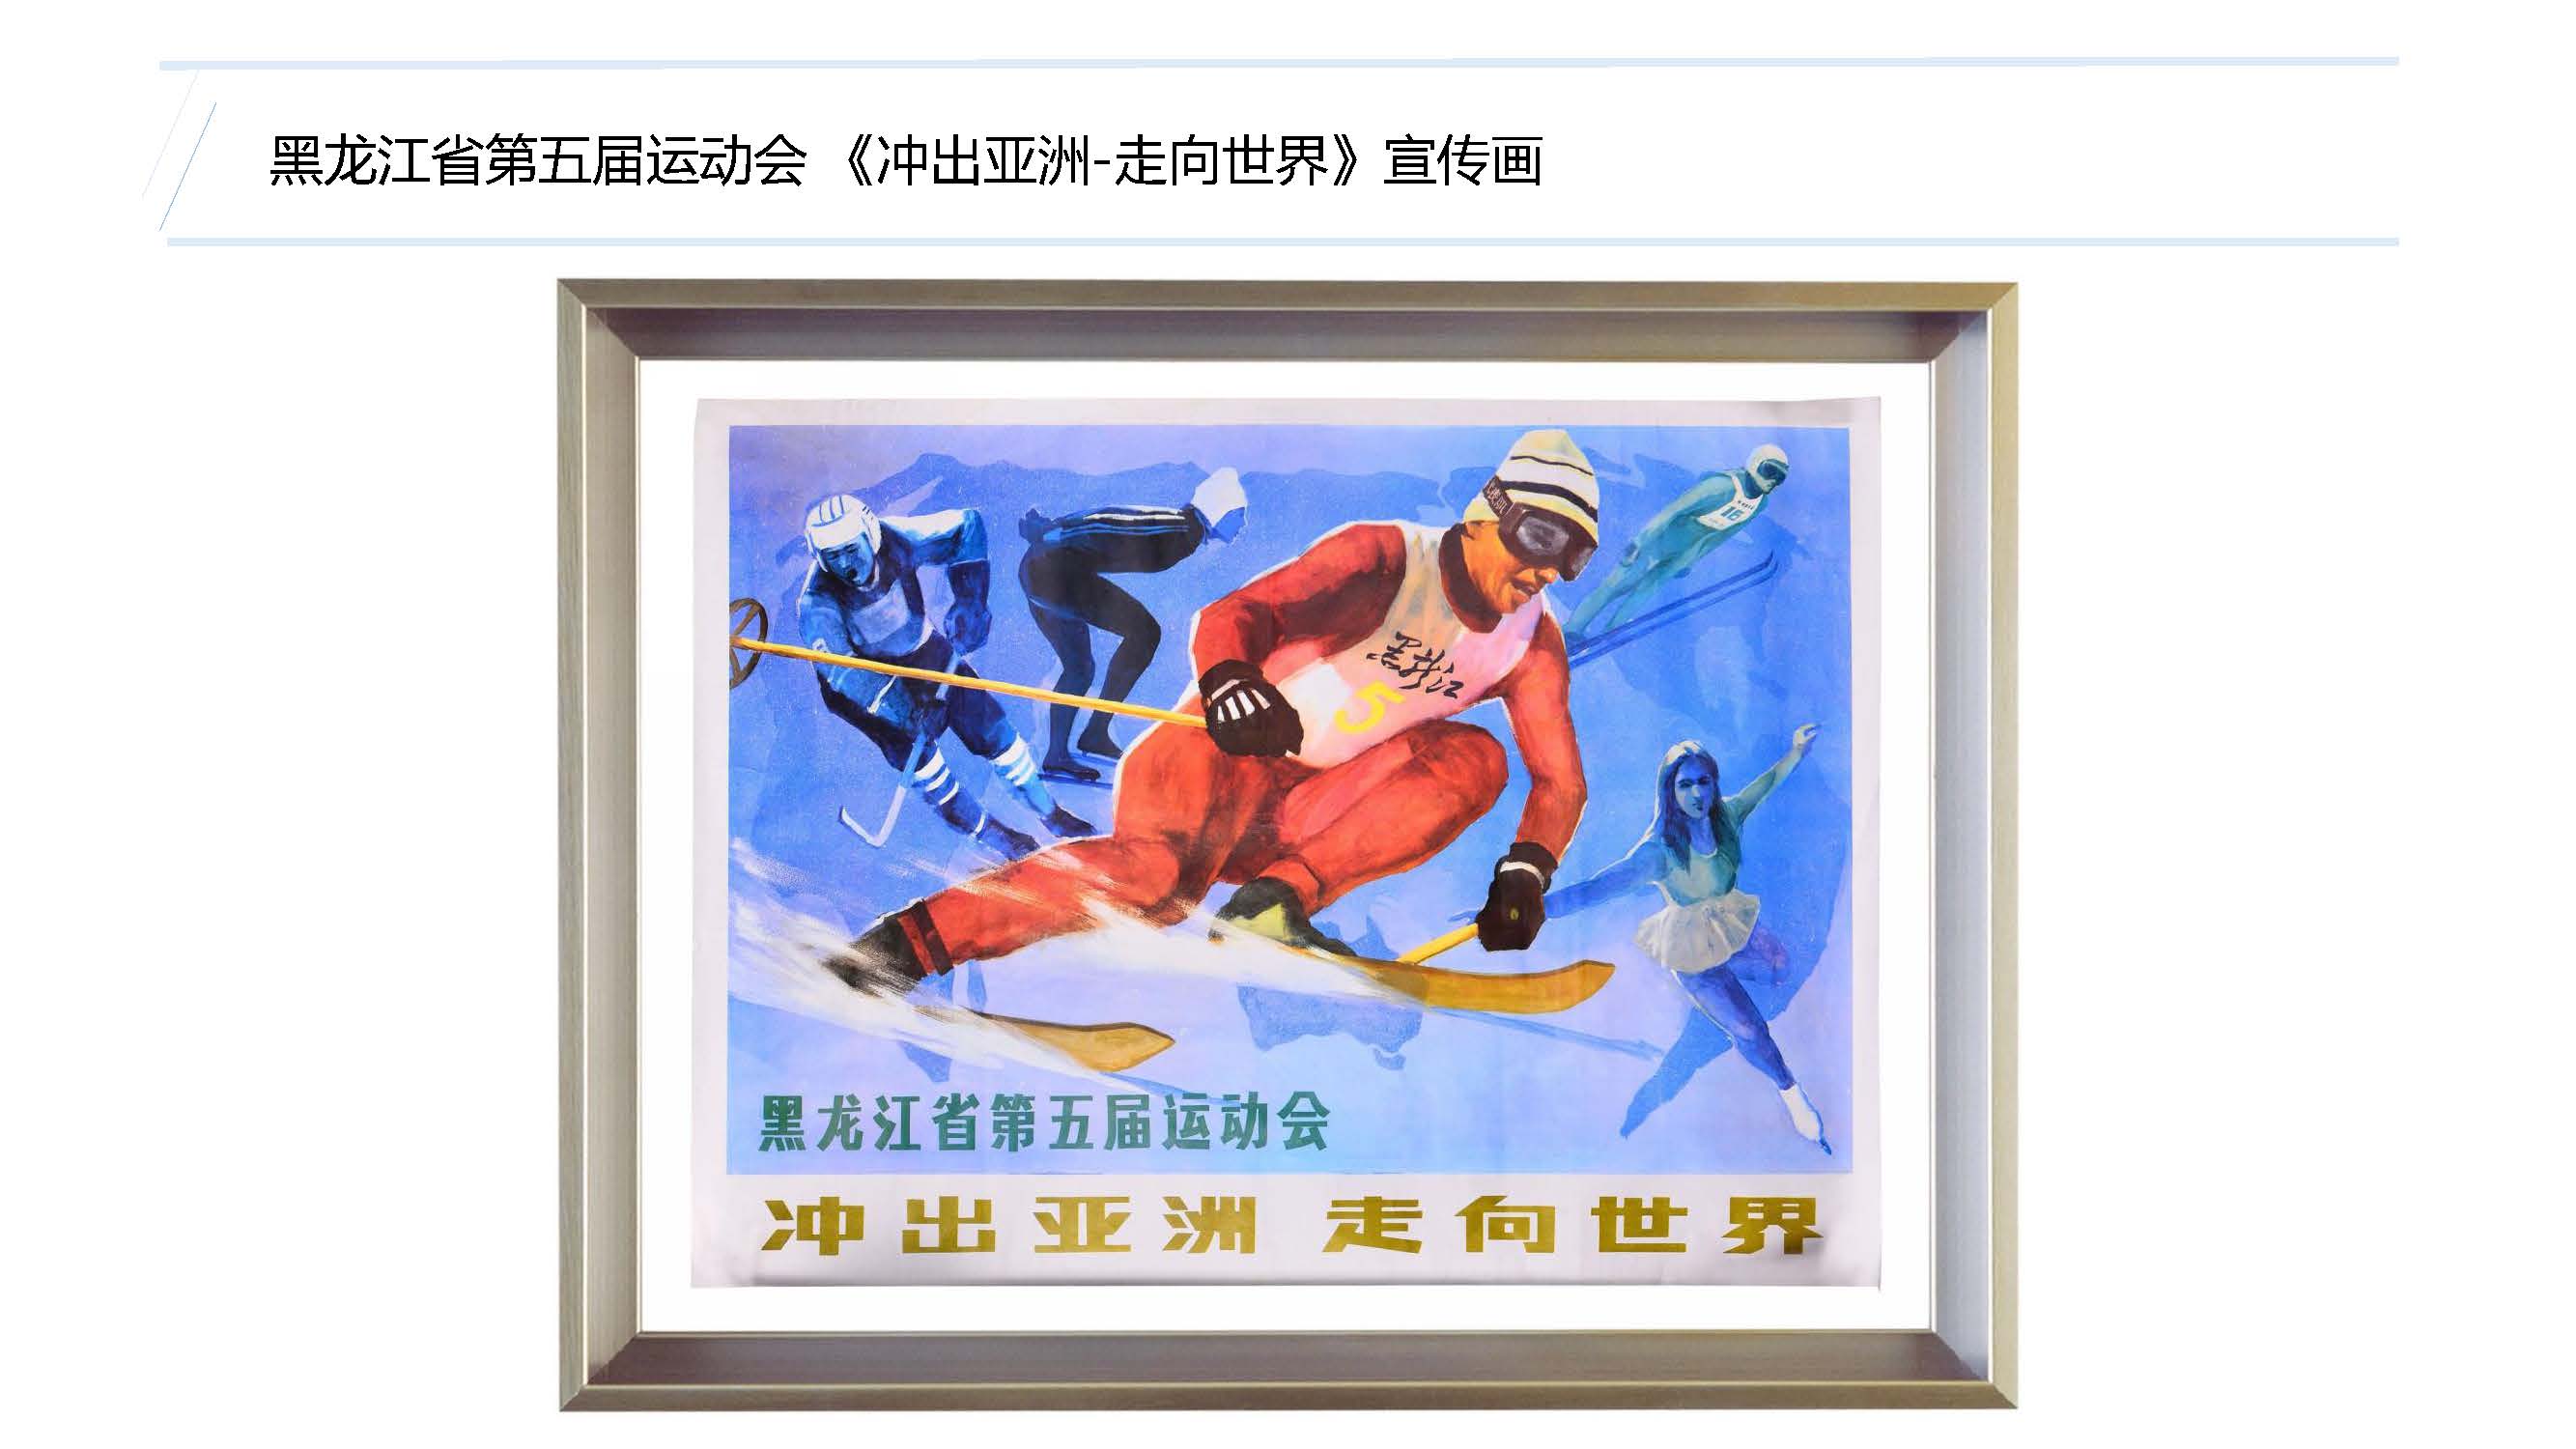 黑龙江省第五届运动会《冲出亚洲-走向世界》宣传画